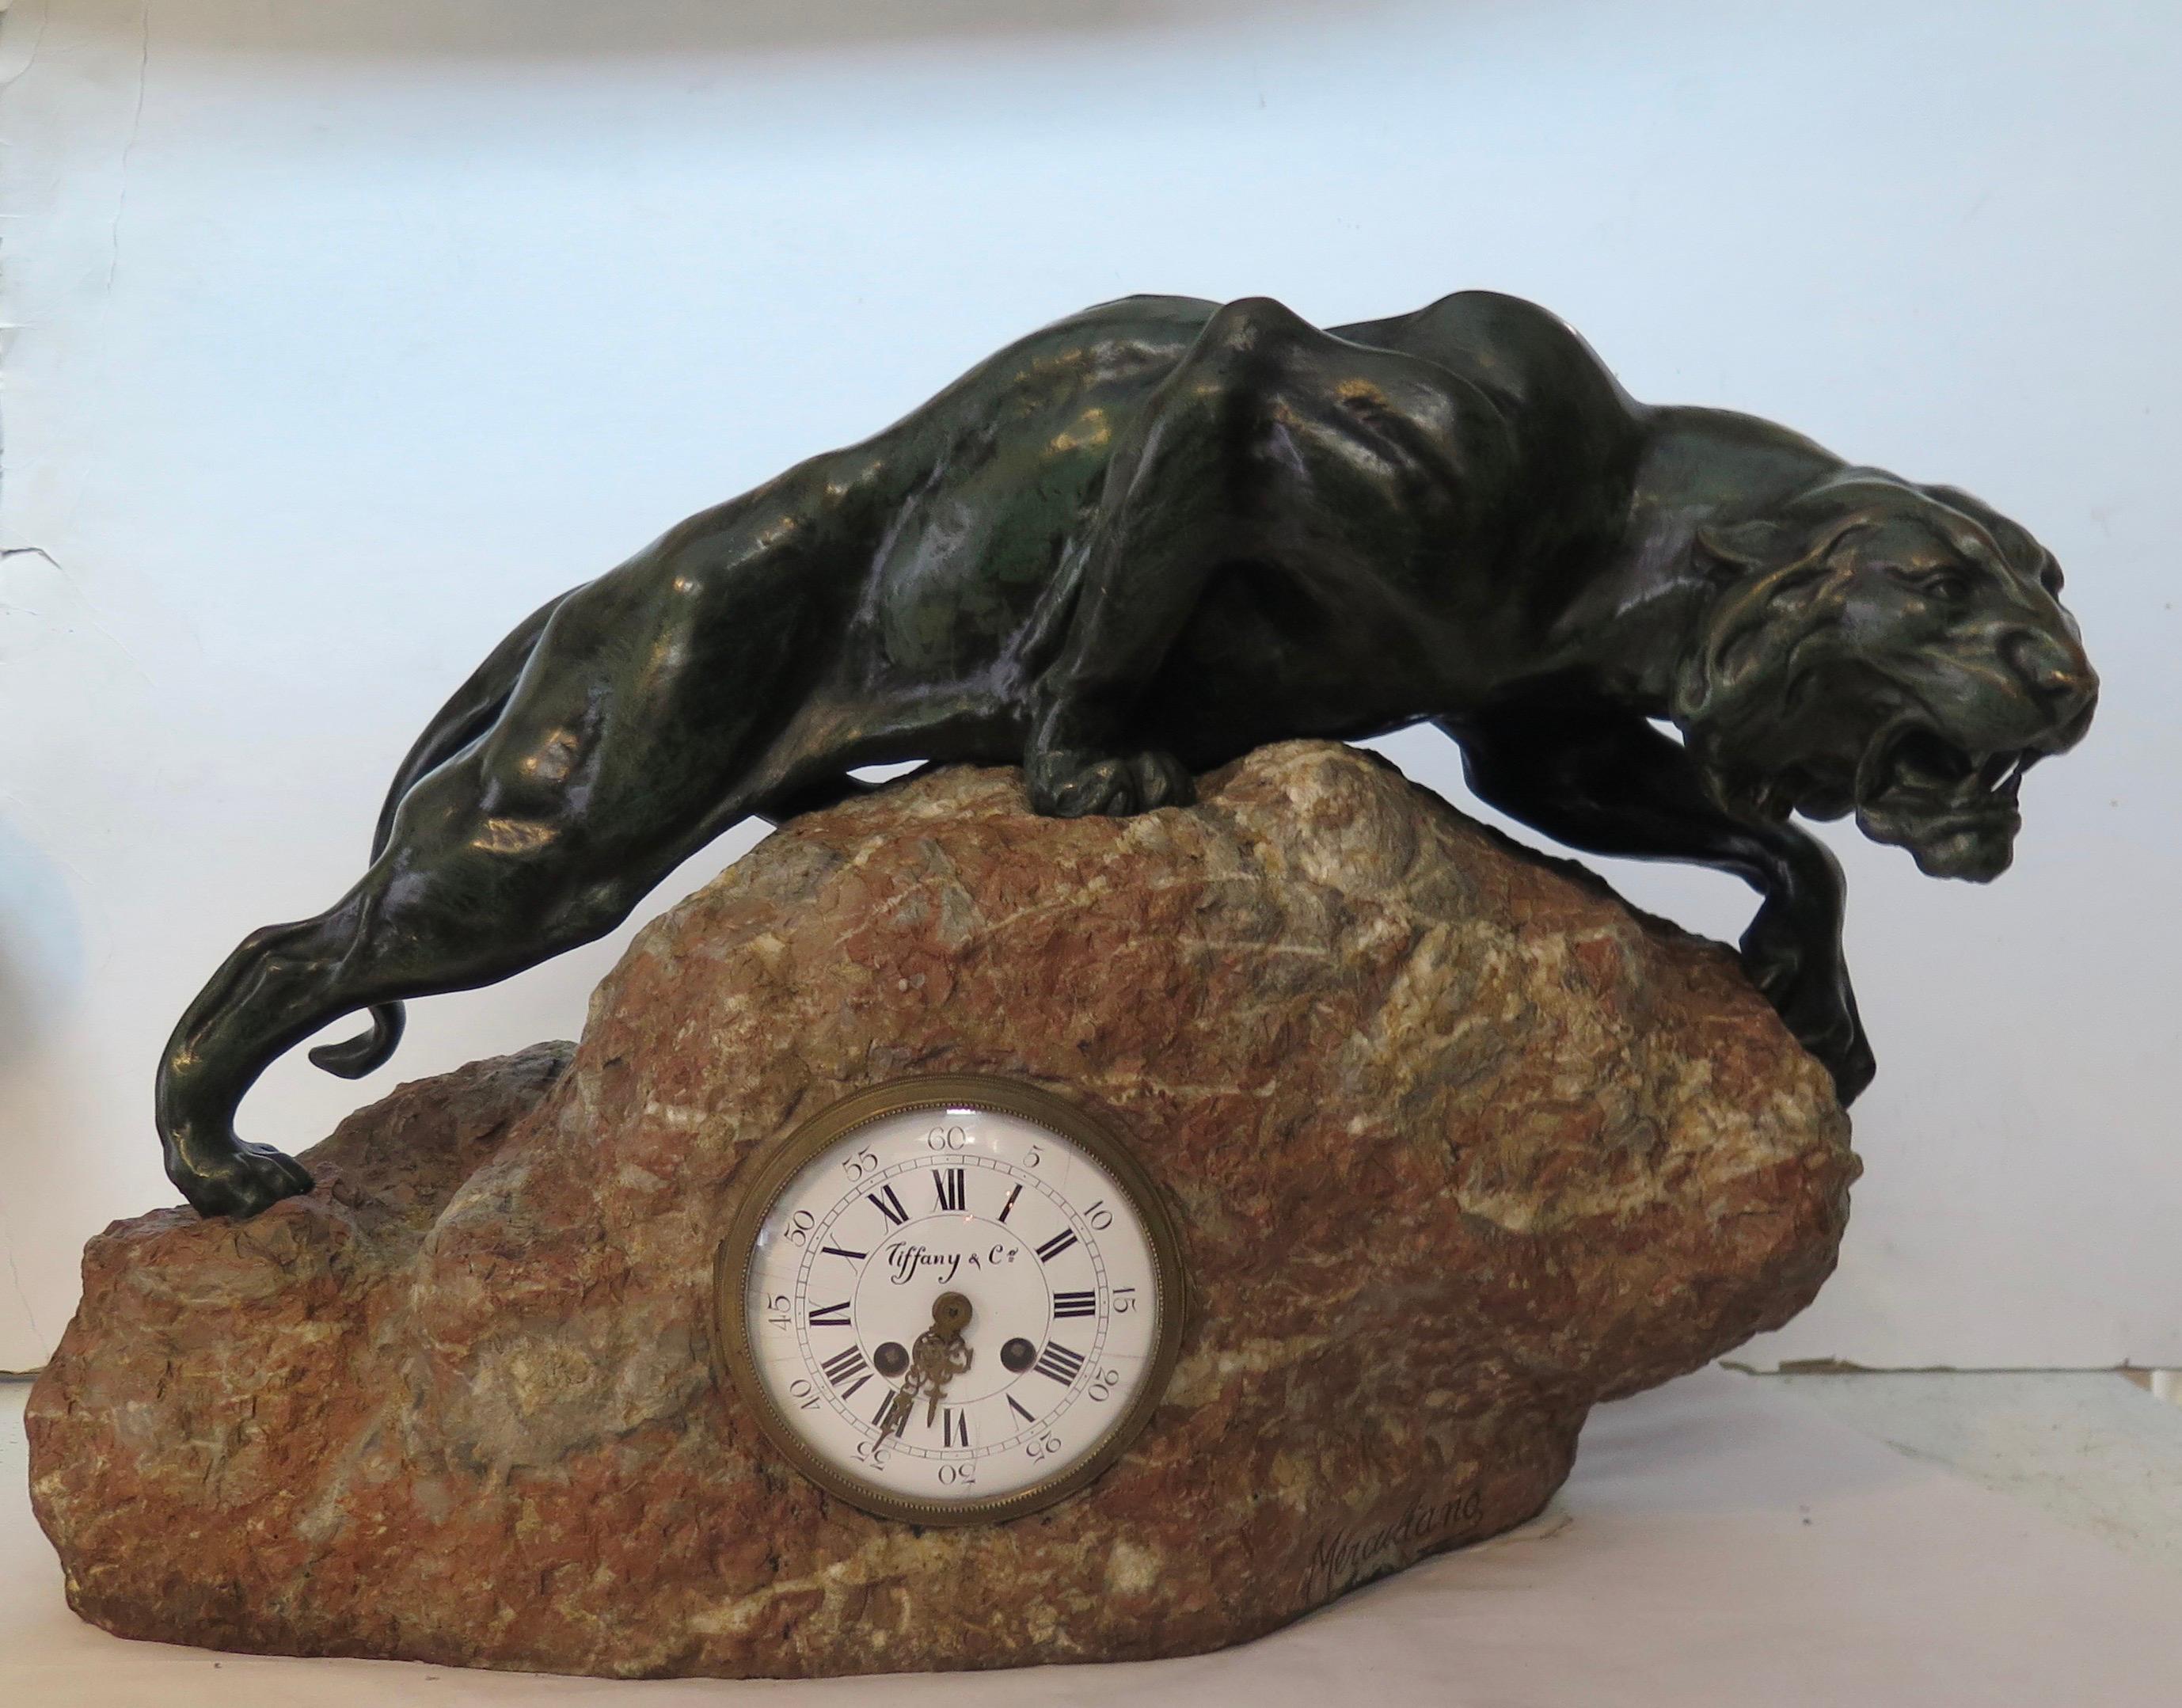 Cette majestueuse sculpture animale en bronze et cette horloge datent du début des années 1900. La sculpture a été créée et signée par l'artiste MERCULIANO. L'étonnante sculpture en bronze patiné vert foncé d'un lion de montagne présente un corps